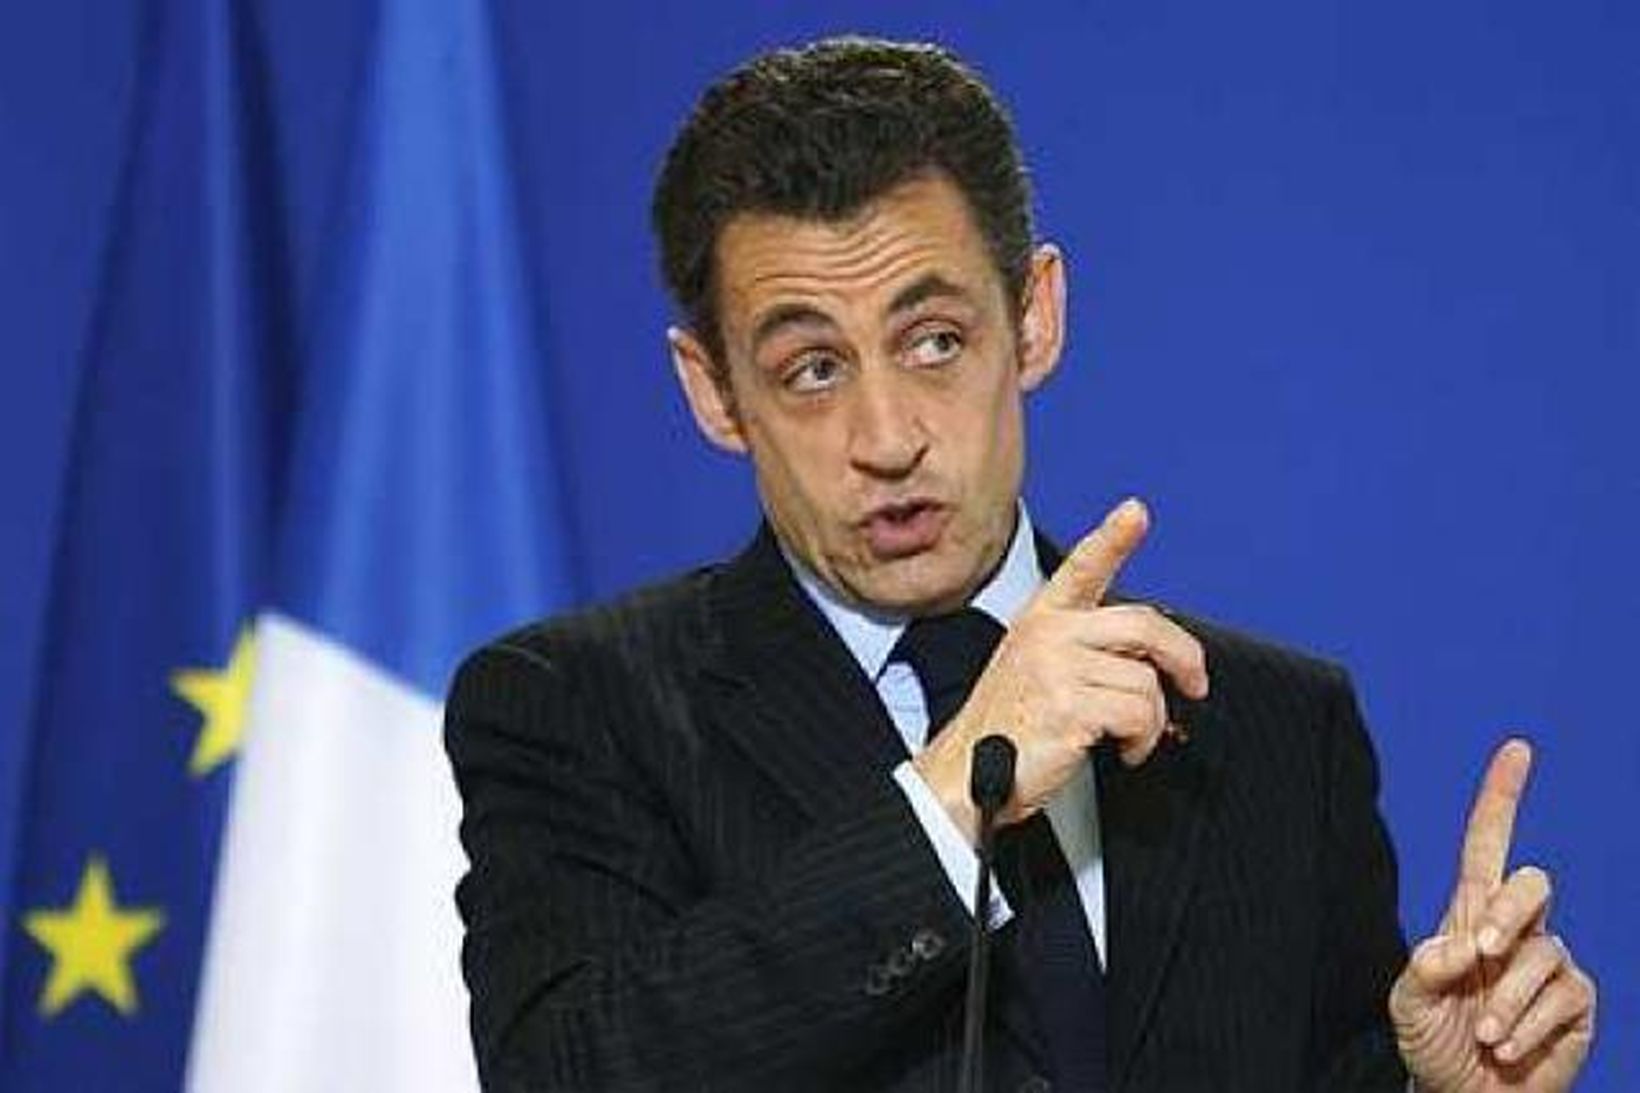 Nicolas Sarkozy, forseti Frakklands, á leiðtogafundinum í dag.